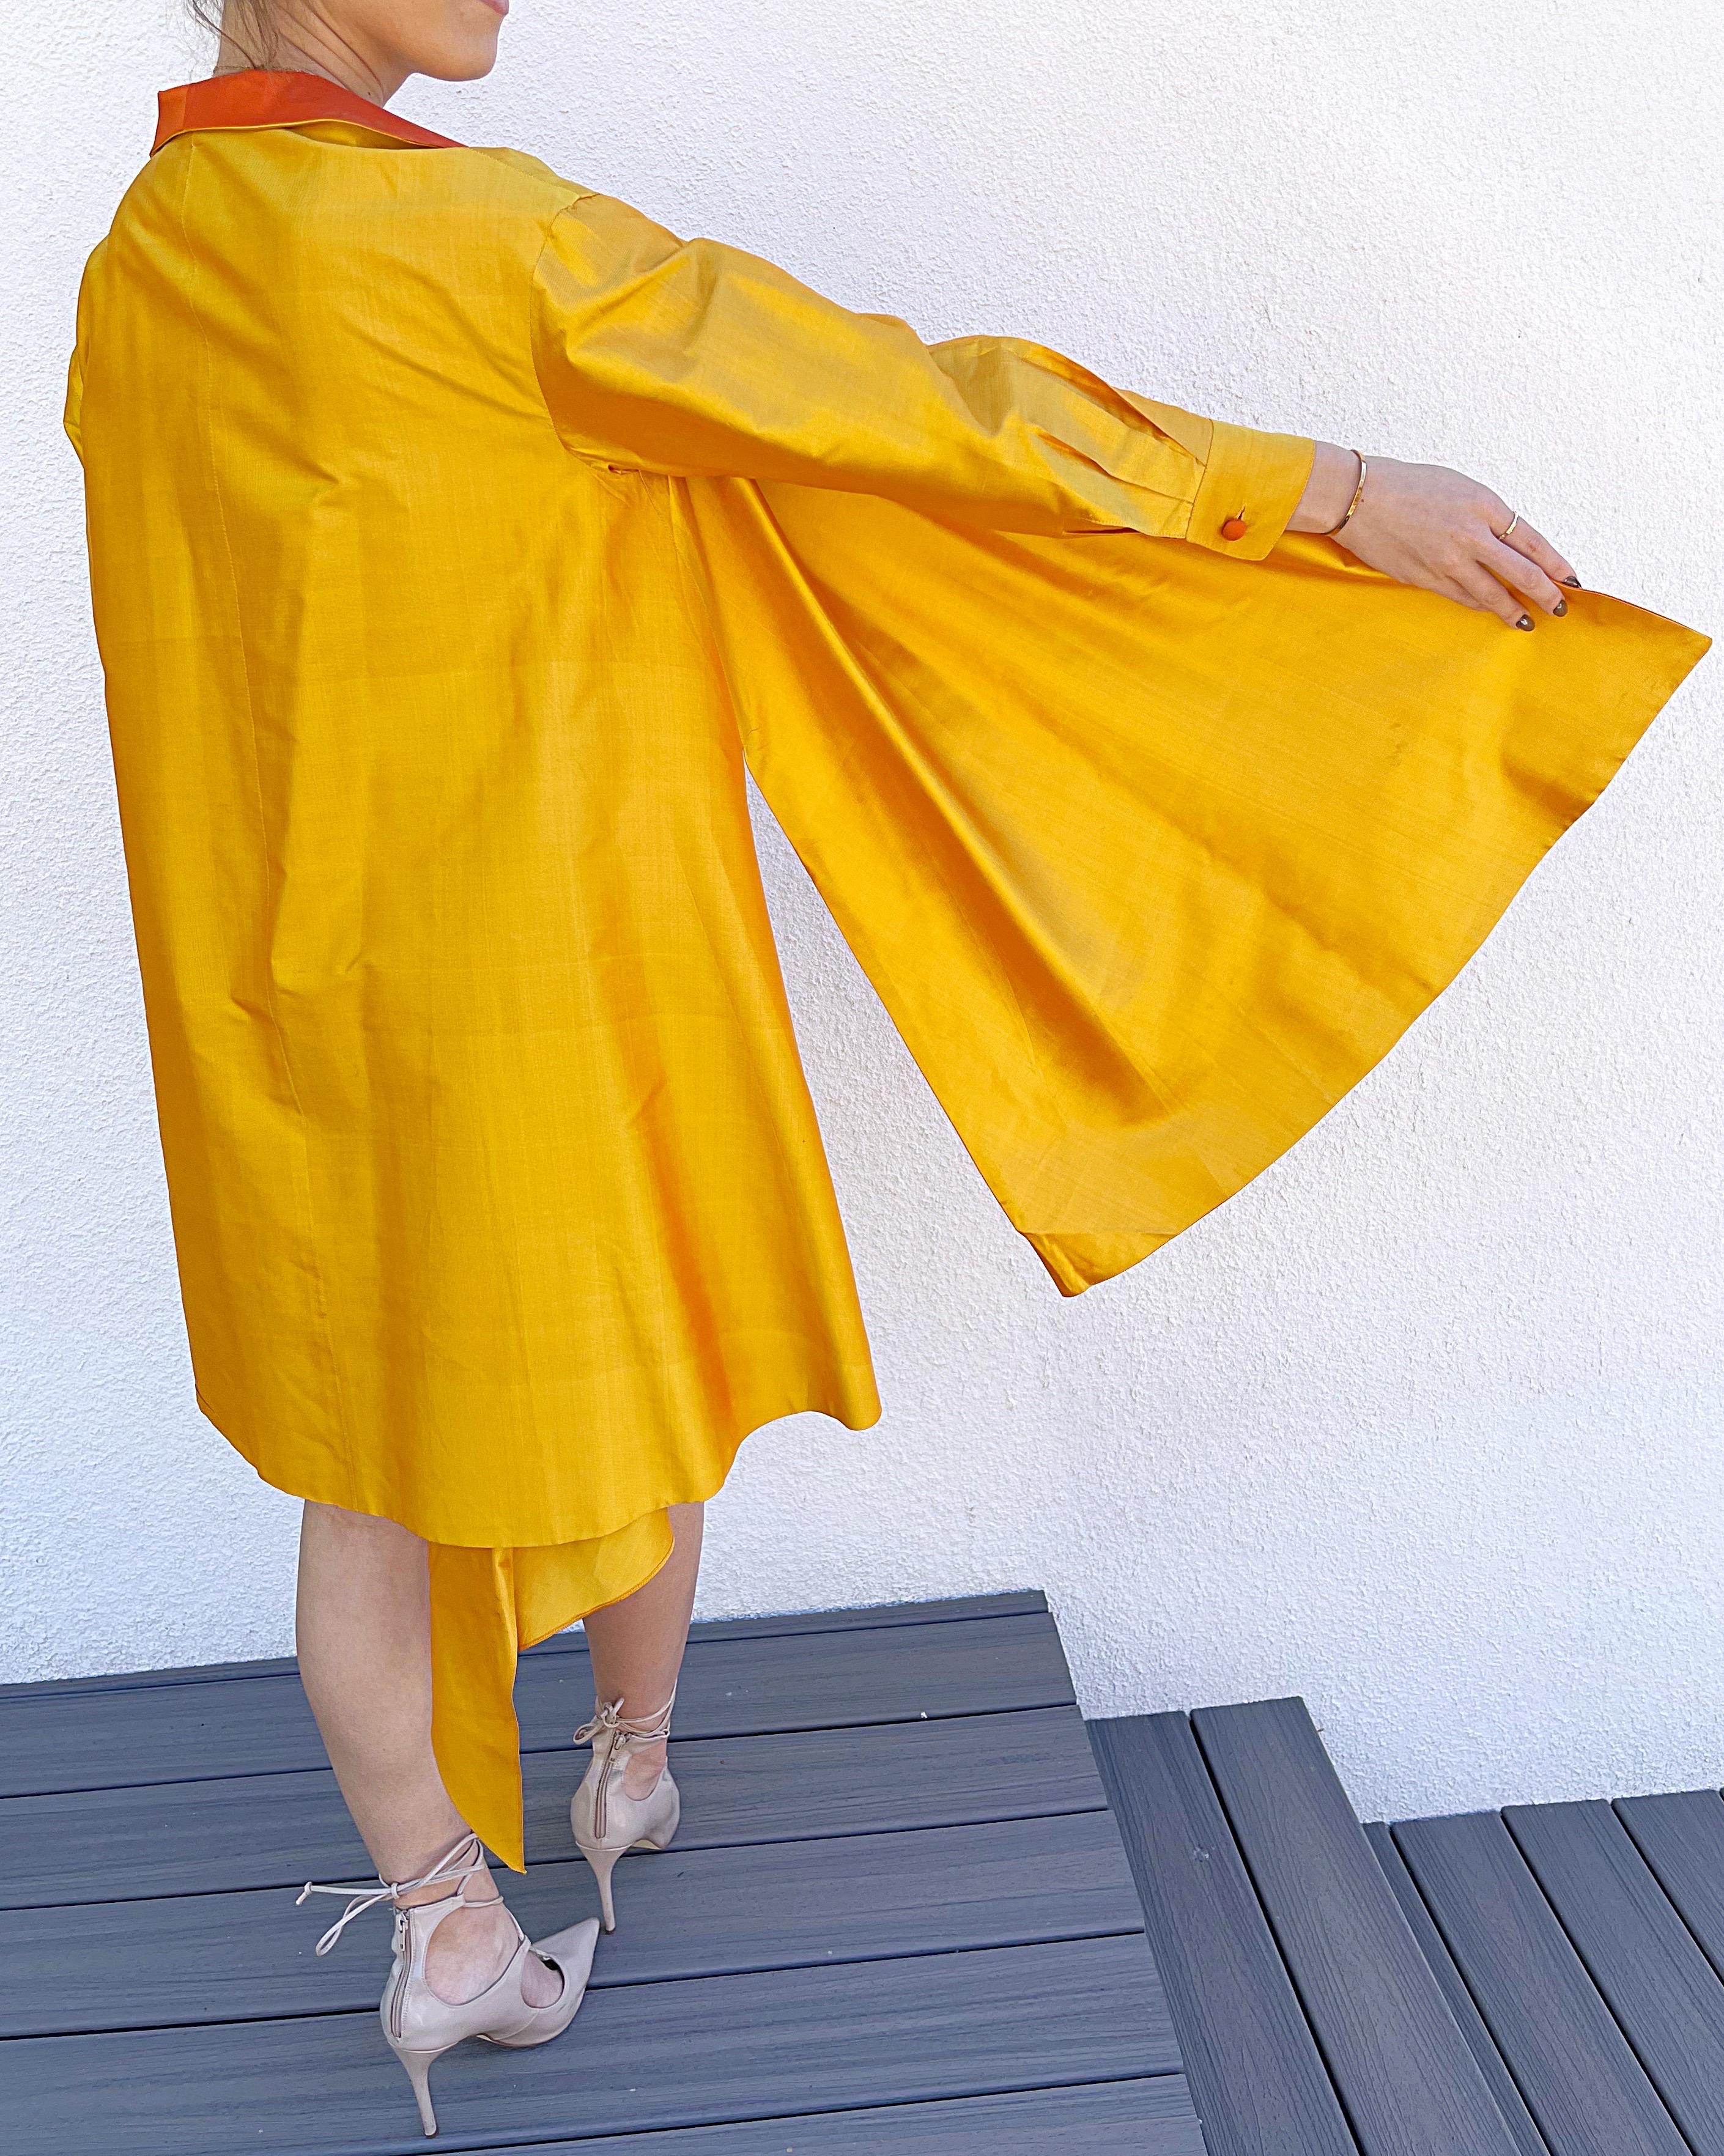 Donna Karan Spring 1987 Sz 2 Three Piece Yellow Orange Blue Bustier Skirt Jacket For Sale 1